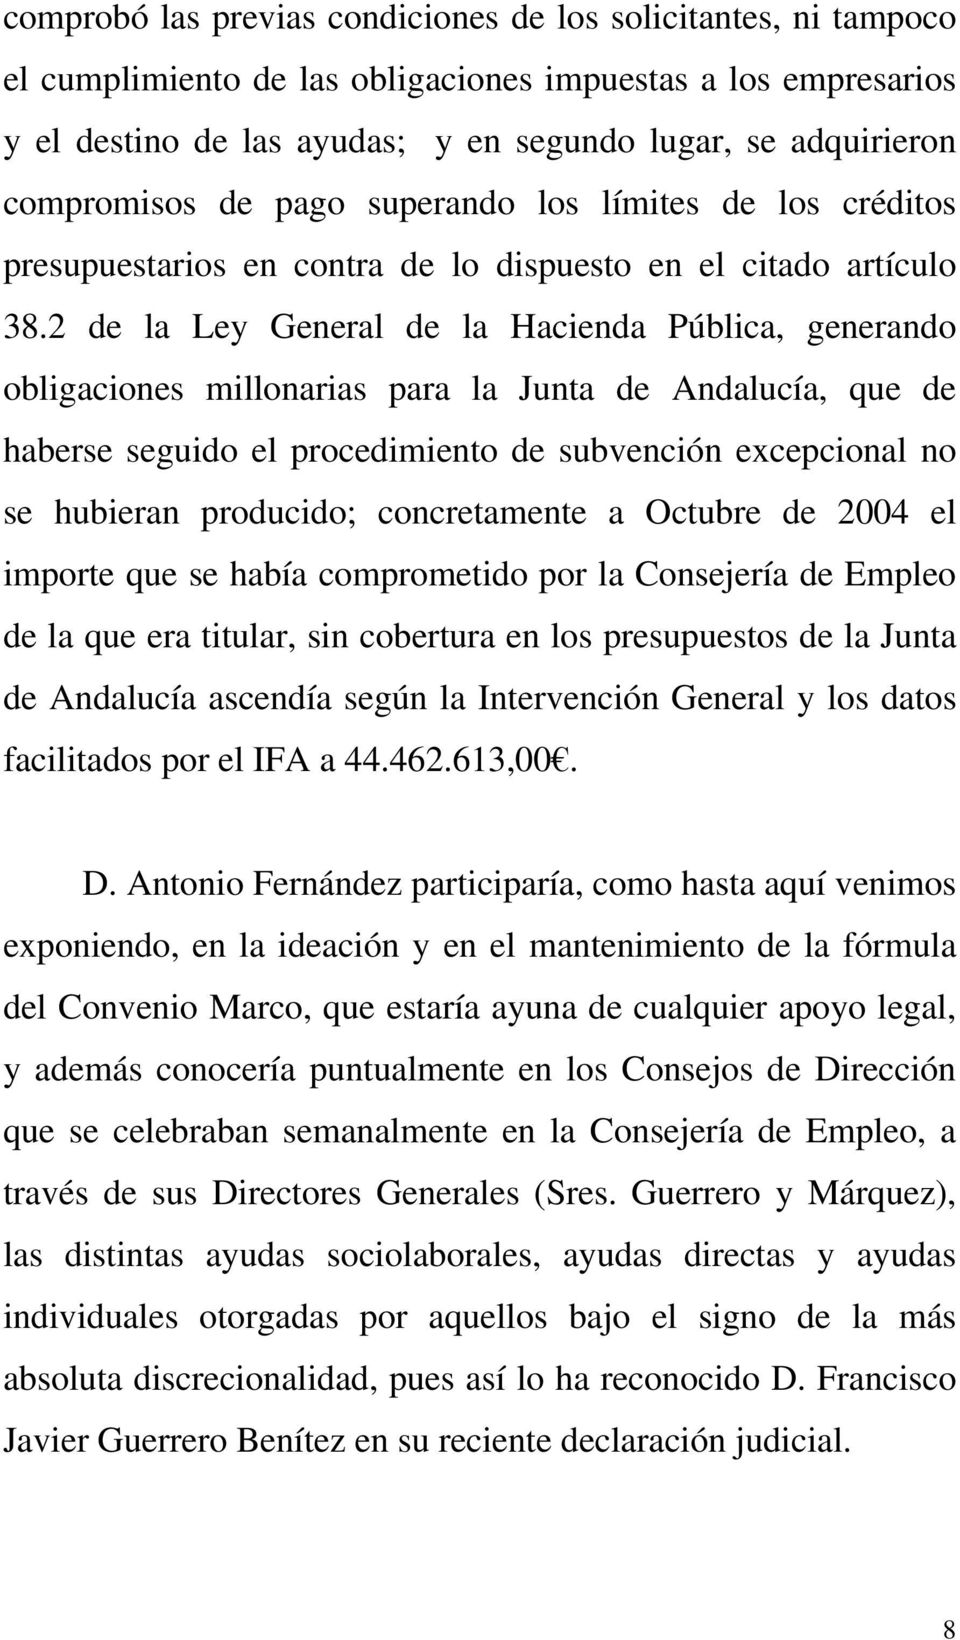 2 de la Ley General de la Hacienda Pública, generando obligaciones millonarias para la Junta de Andalucía, que de haberse seguido el procedimiento de subvención excepcional no se hubieran producido;